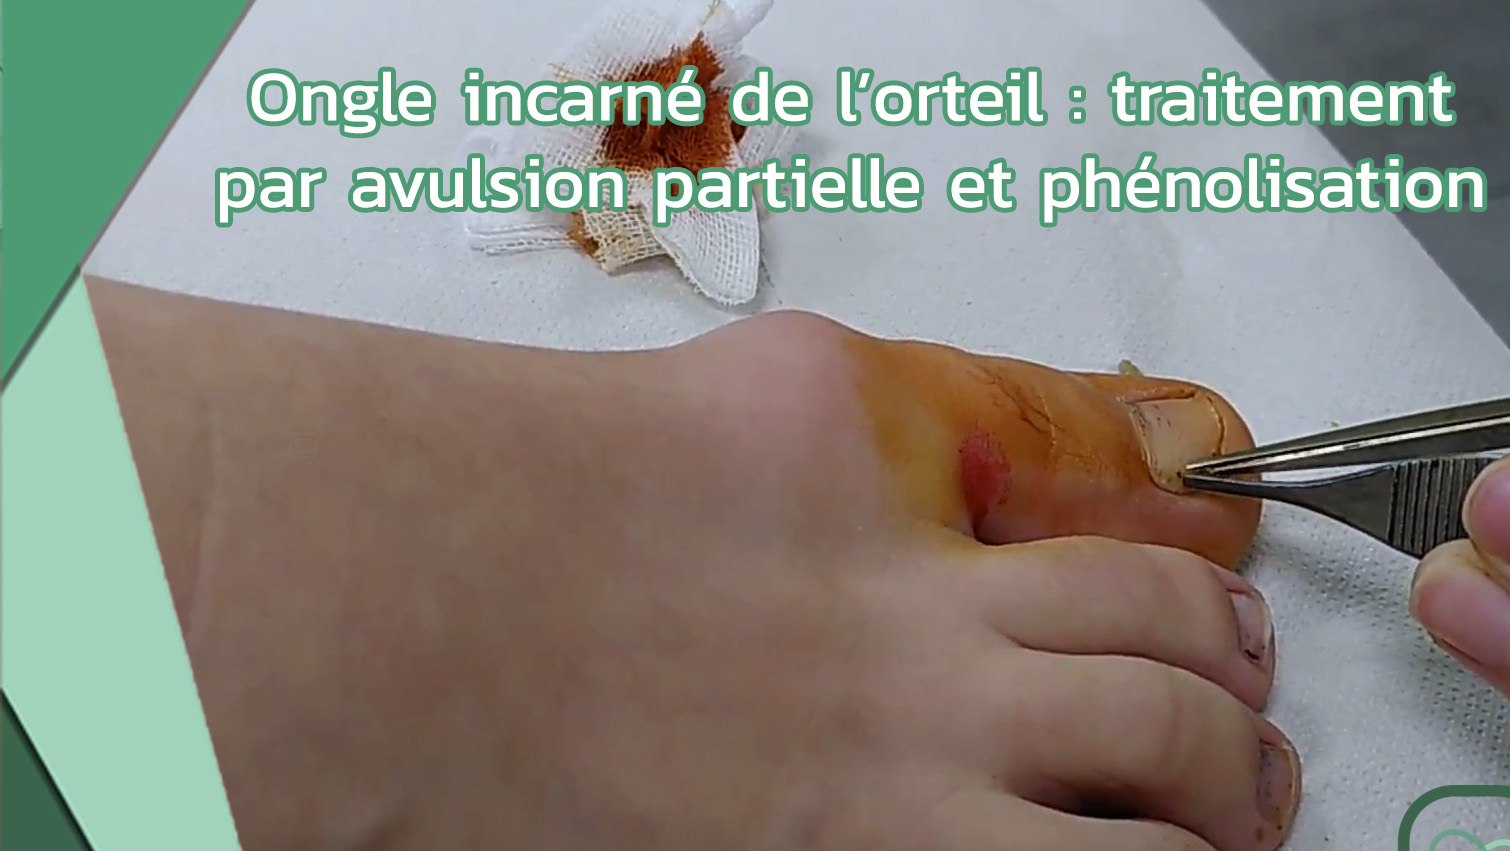 Ongle incarné de l’orteil traitement par avulsion partielle et phénolisation thumbnail